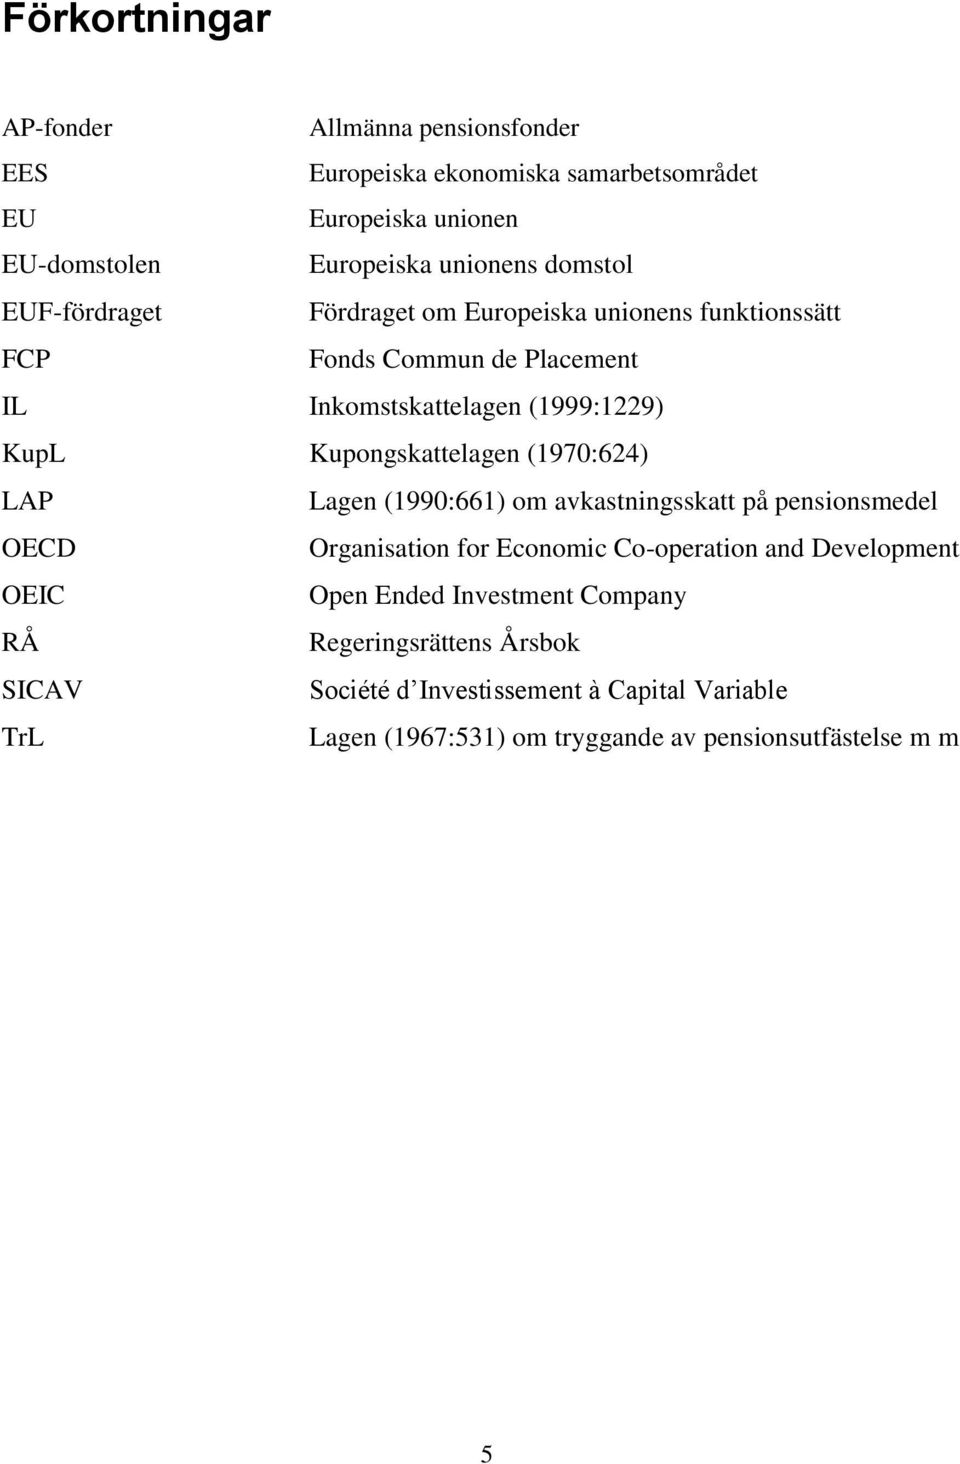 Kupongskattelagen (1970:624) LAP Lagen (1990:661) om avkastningsskatt på pensionsmedel OECD Organisation for Economic Co-operation and Development